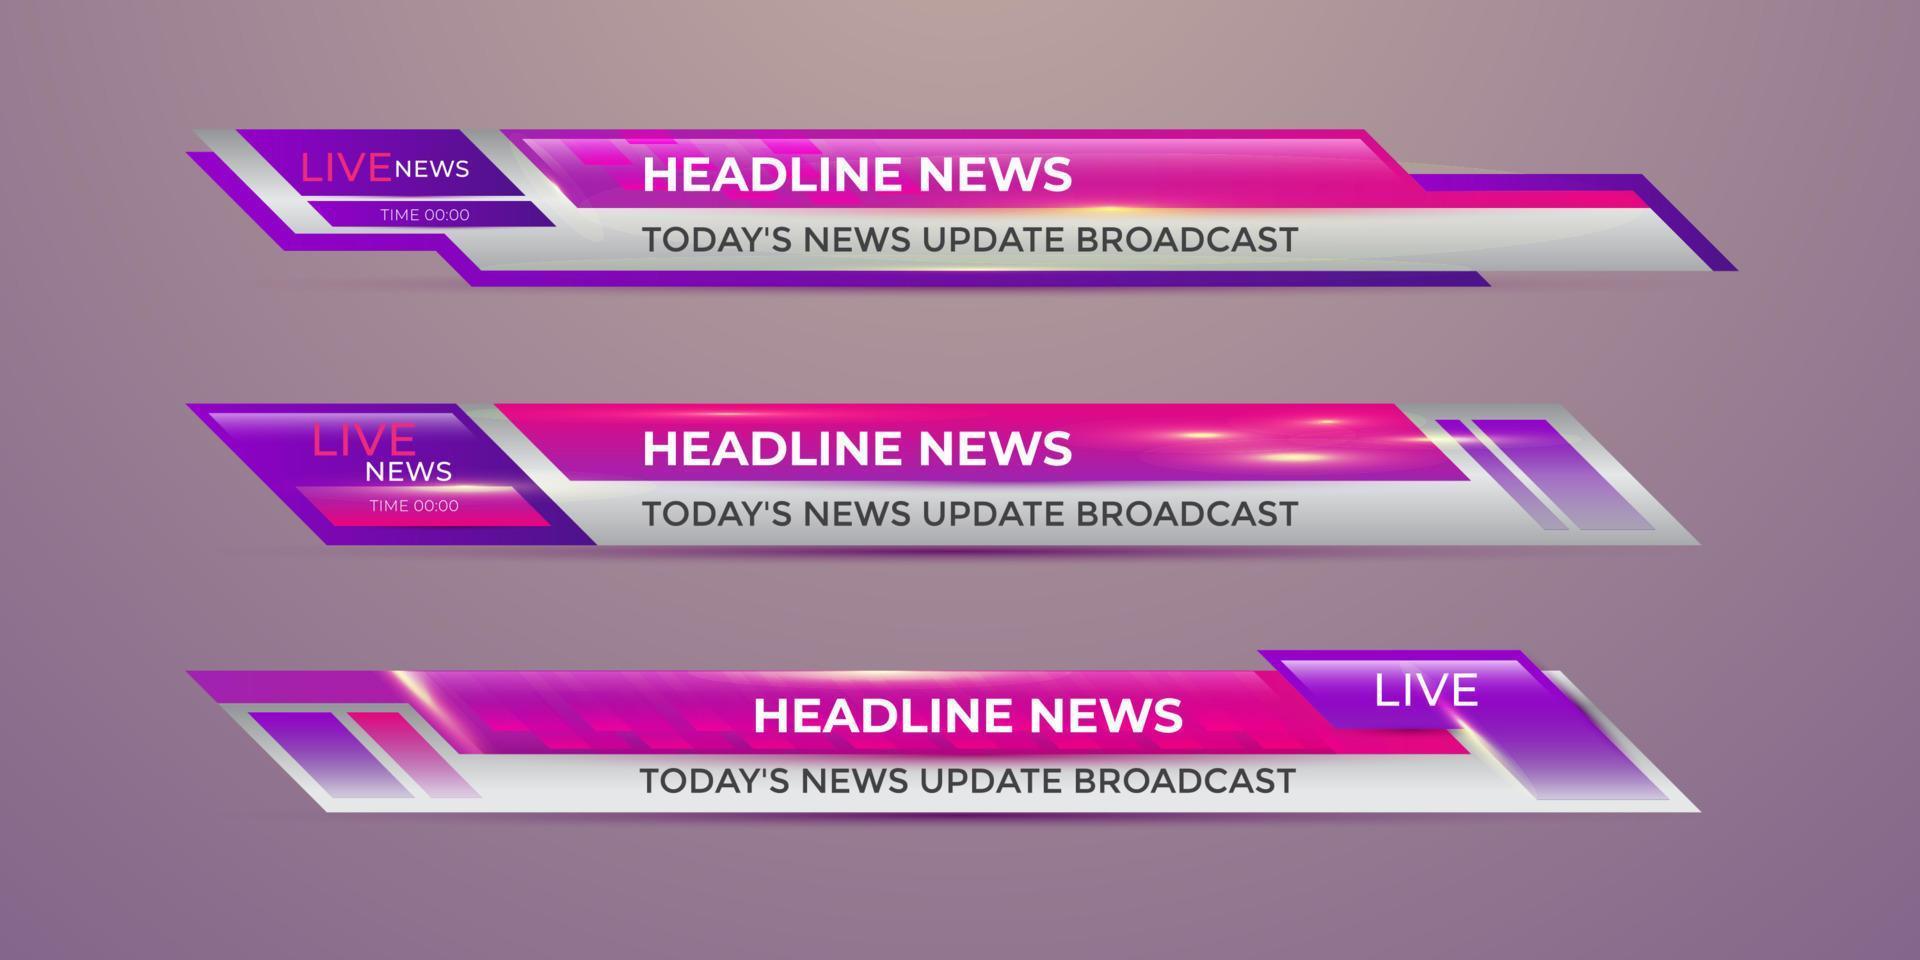 Broadcast-Nachrichten im unteren Drittel moderne Banner-Vorlage für Fernseh-, Video- und Medienkanal vektor